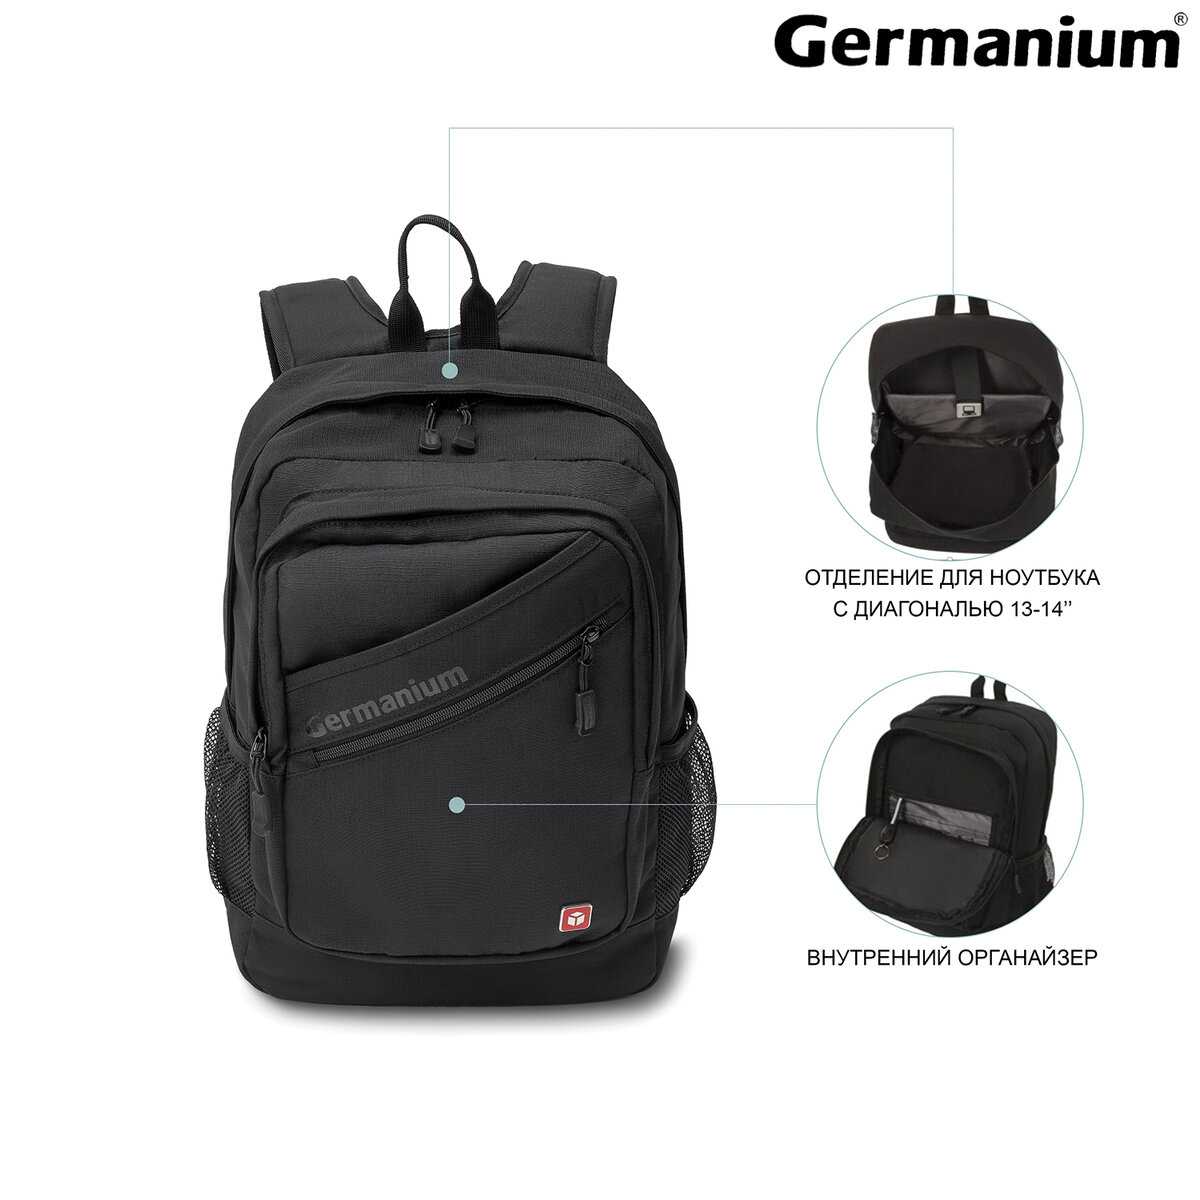 Рюкзак Germanium S-09 универсальный с отделением для ноутбука черный - фото 4